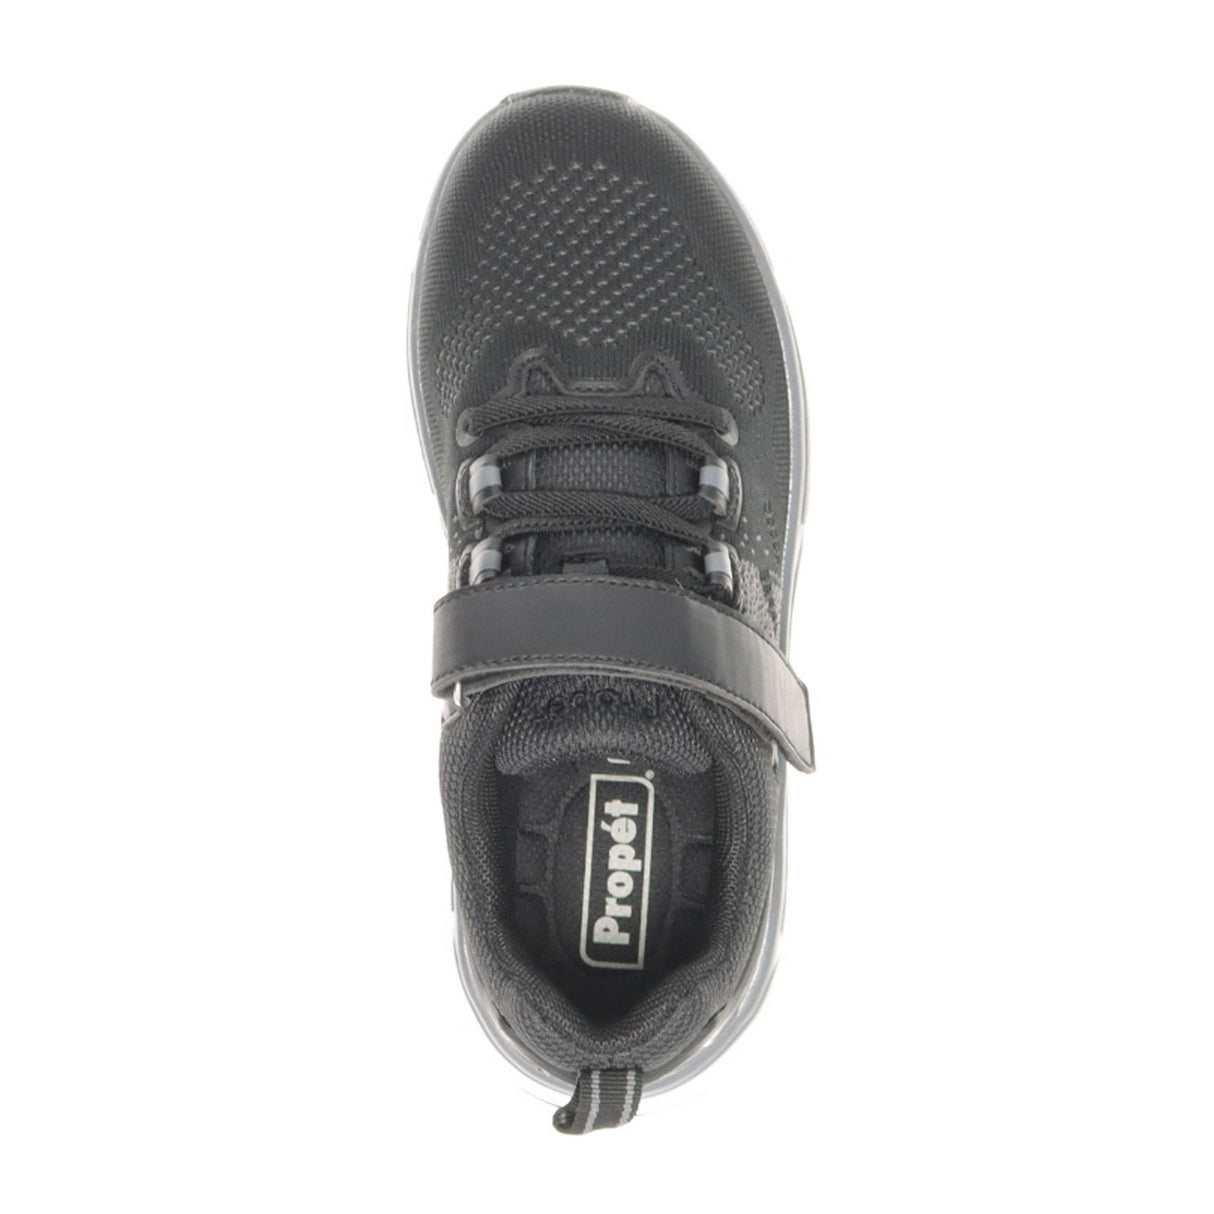 Propet Ultra FX Walking Shoe (Women) - Black/Grey Athletic - Walking - The Heel Shoe Fitters